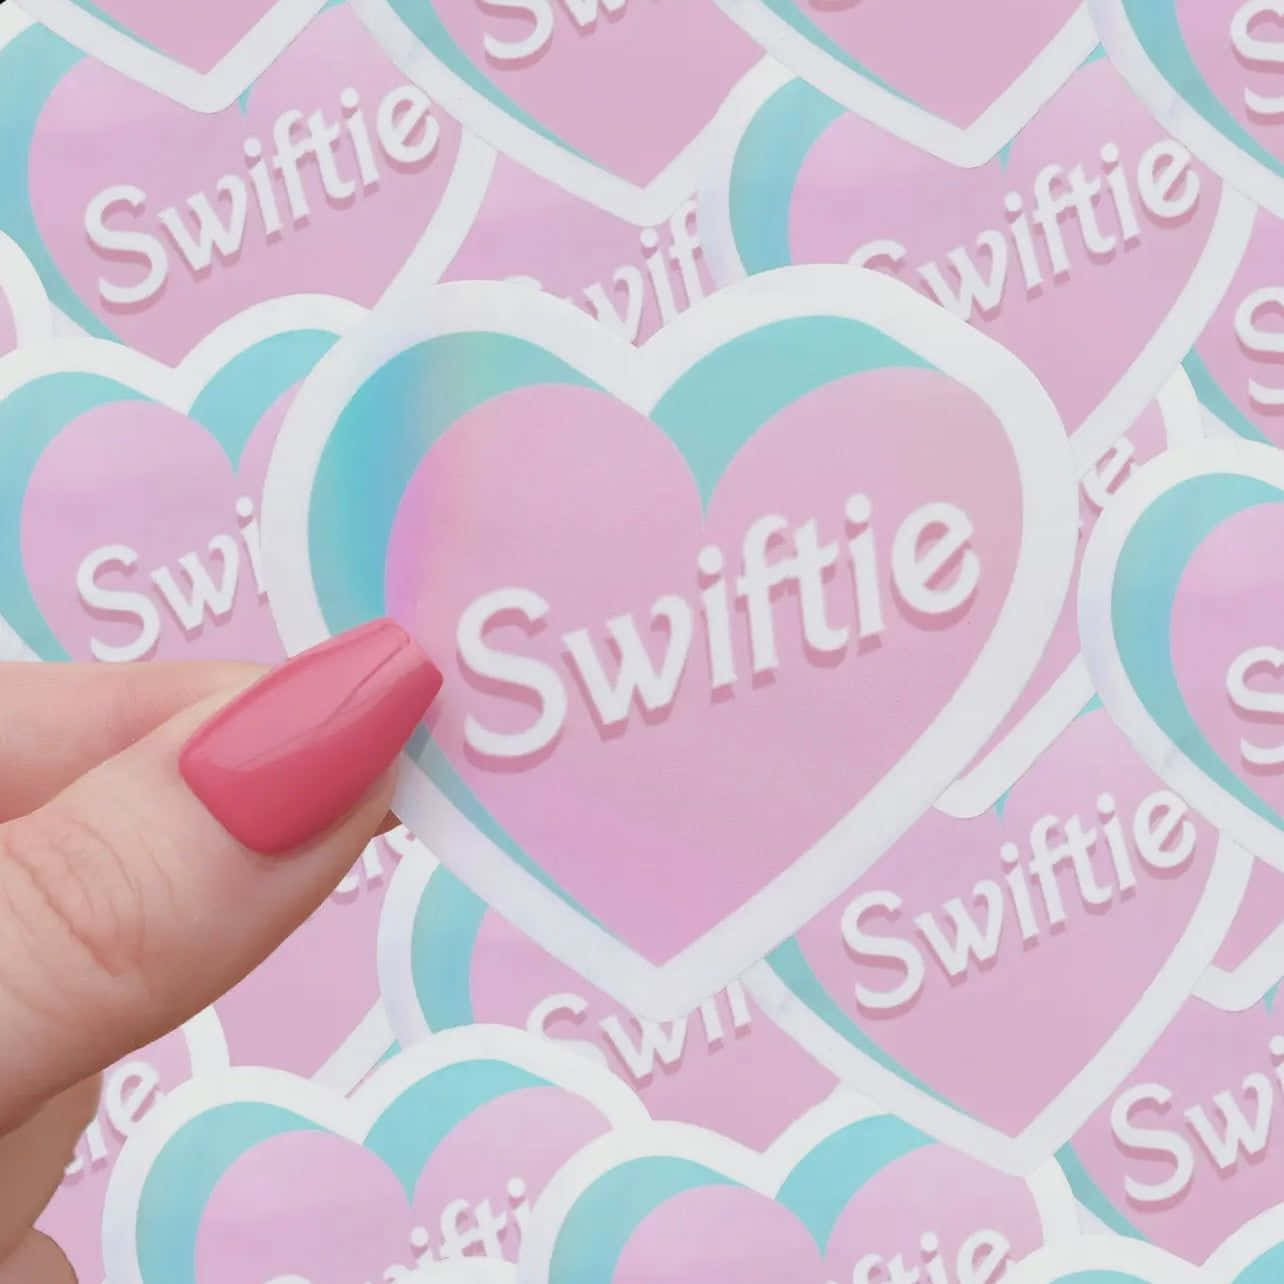 Swiftie Heart Stickers Fan Merchandise Wallpaper